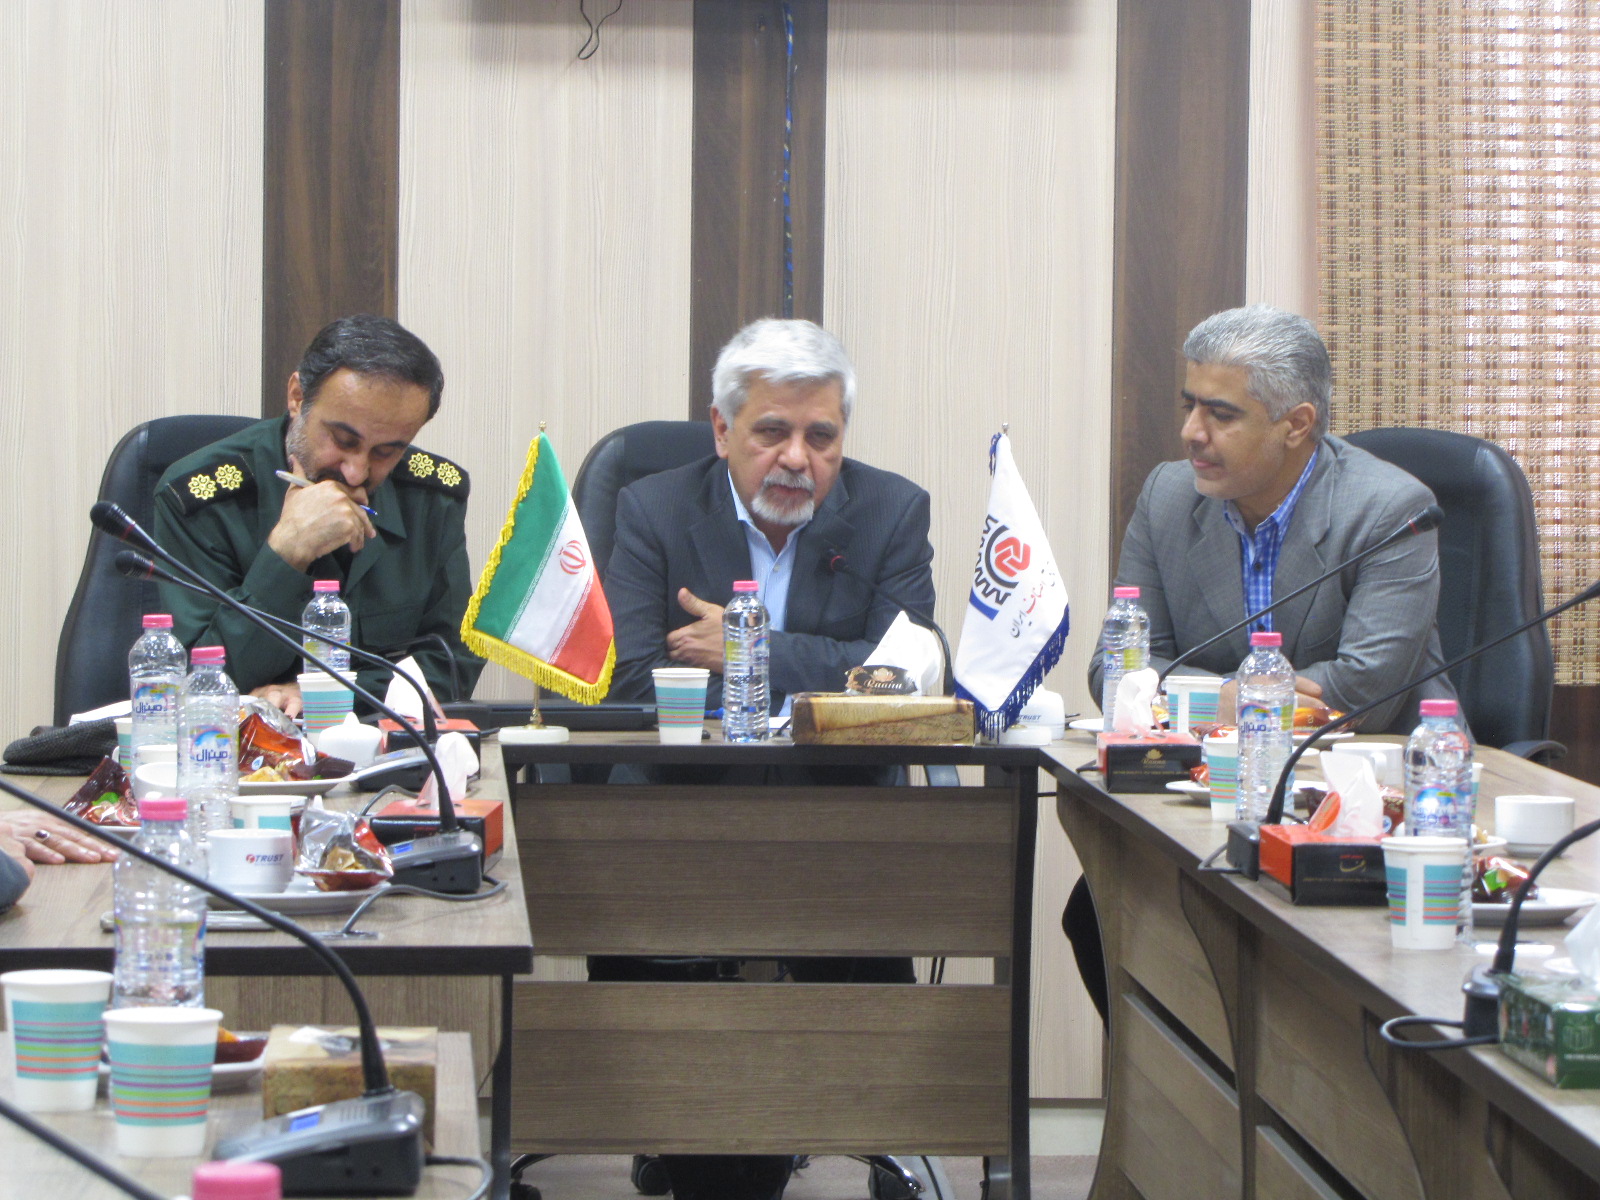 جلسه شورای امربه معروف ونهی ازمنکر اتاق اصناف و مجتمع های تجاری شیراز